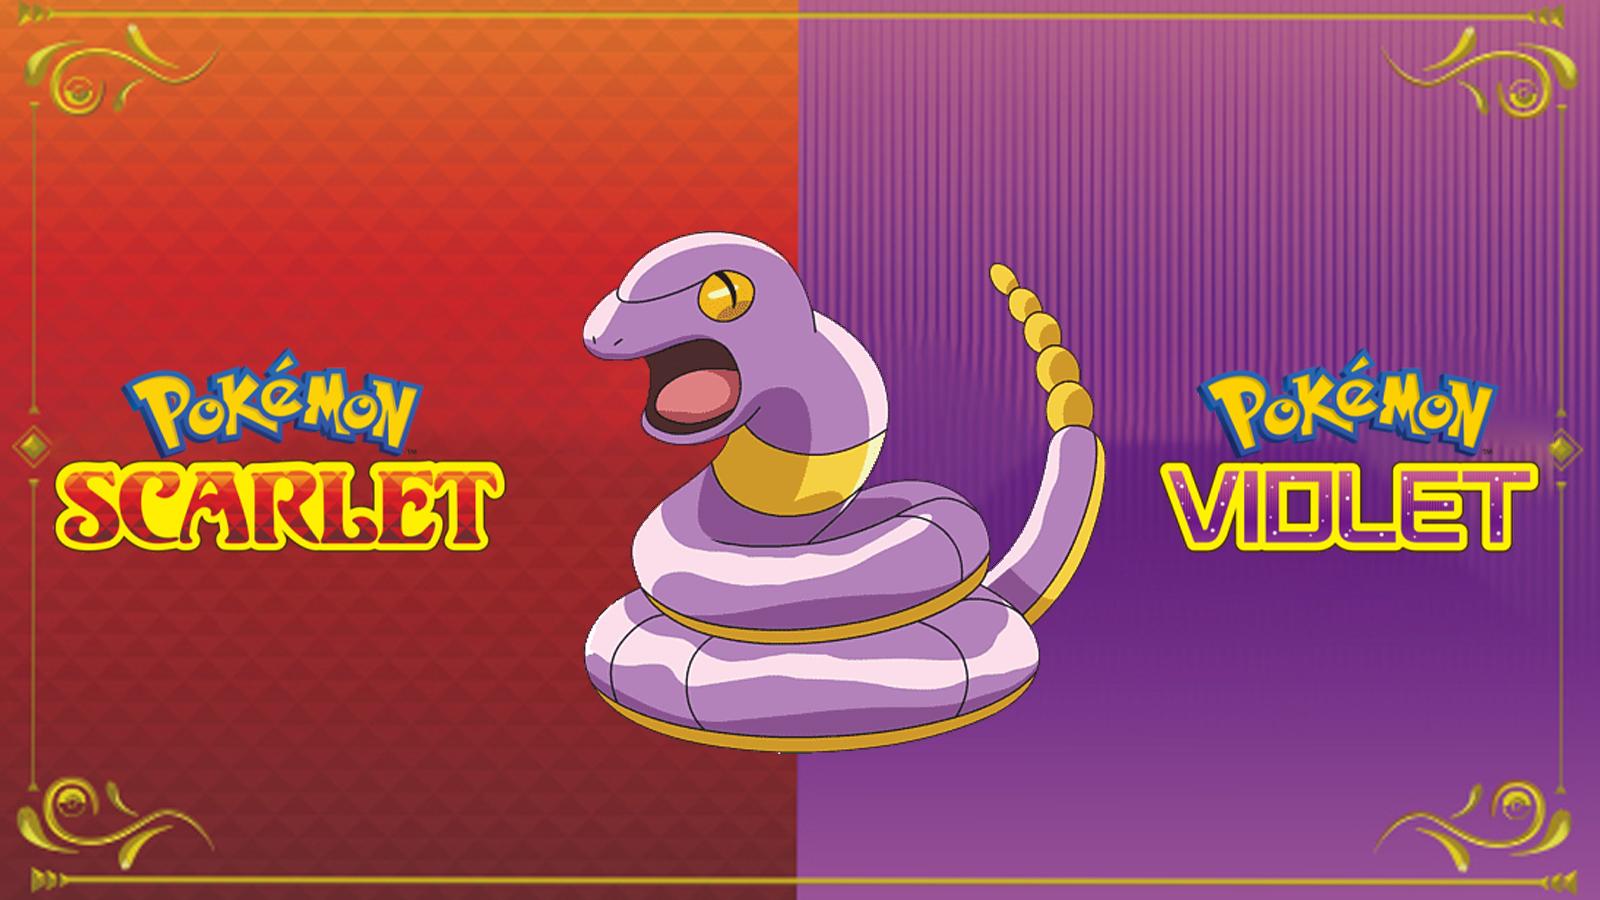 The best Snake Pokémon